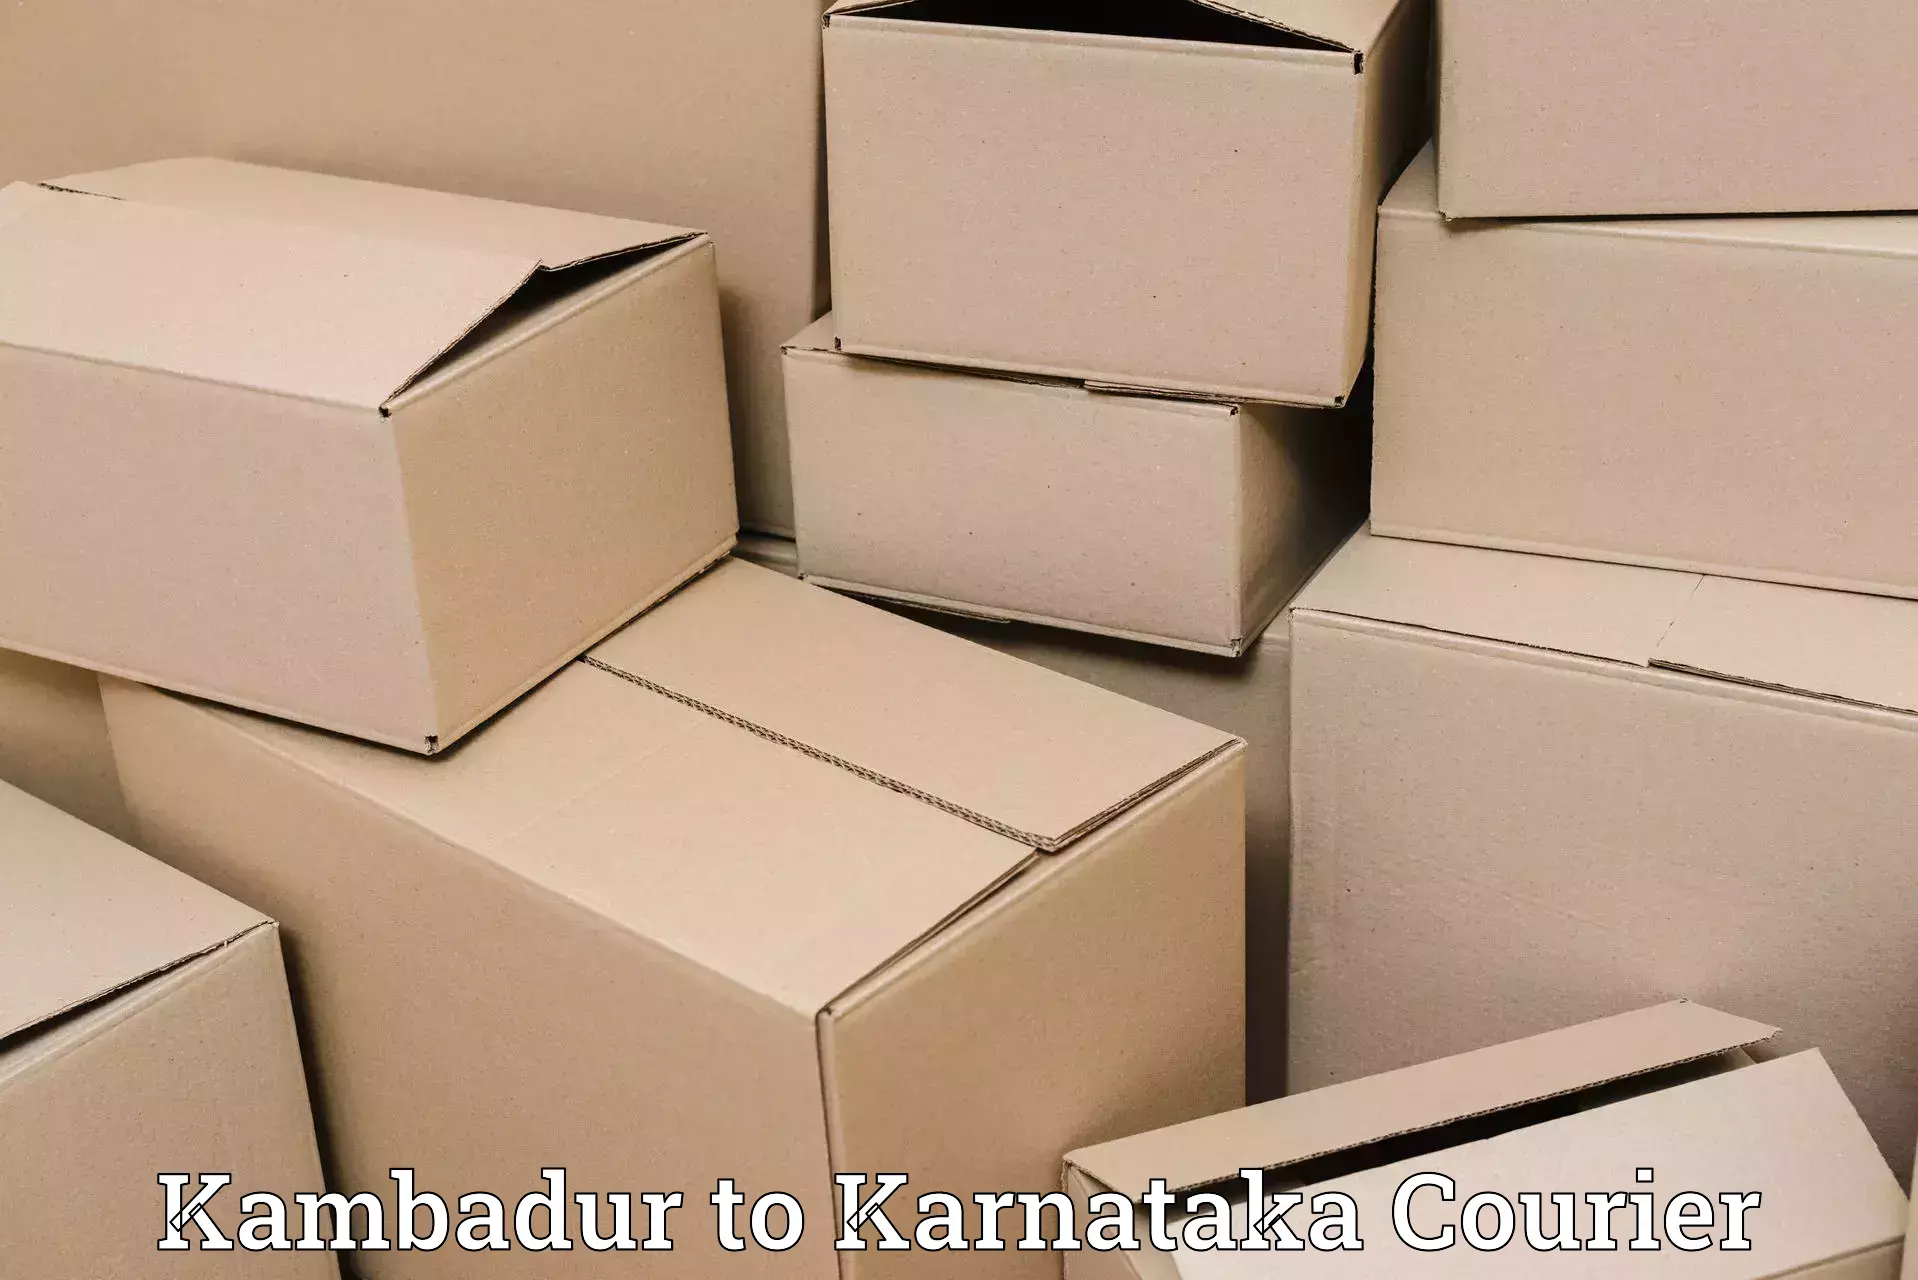 Enhanced tracking features Kambadur to Shanivarasanthe